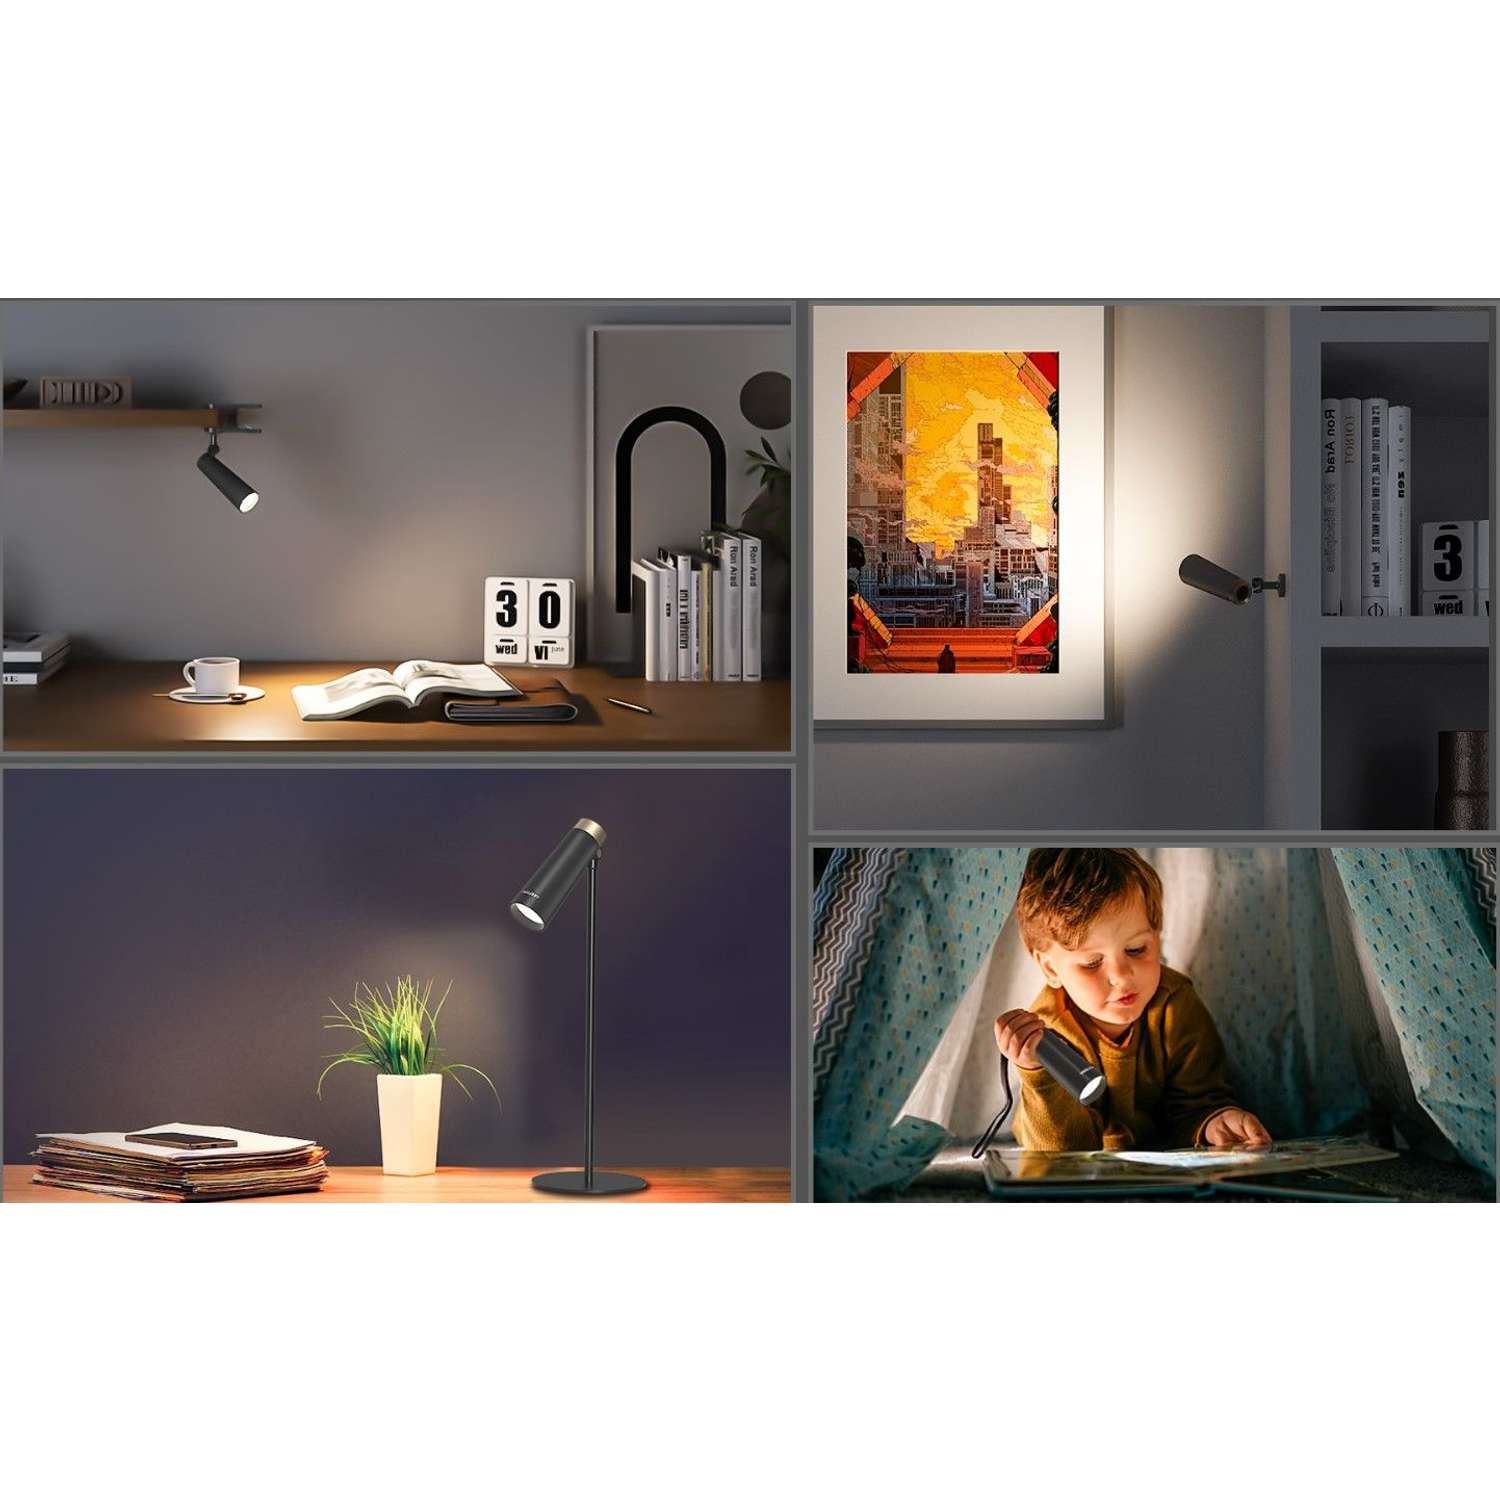 Настольная лампа Yeelight 4-in-1 Rechargeable Desk Lamp - фото 5